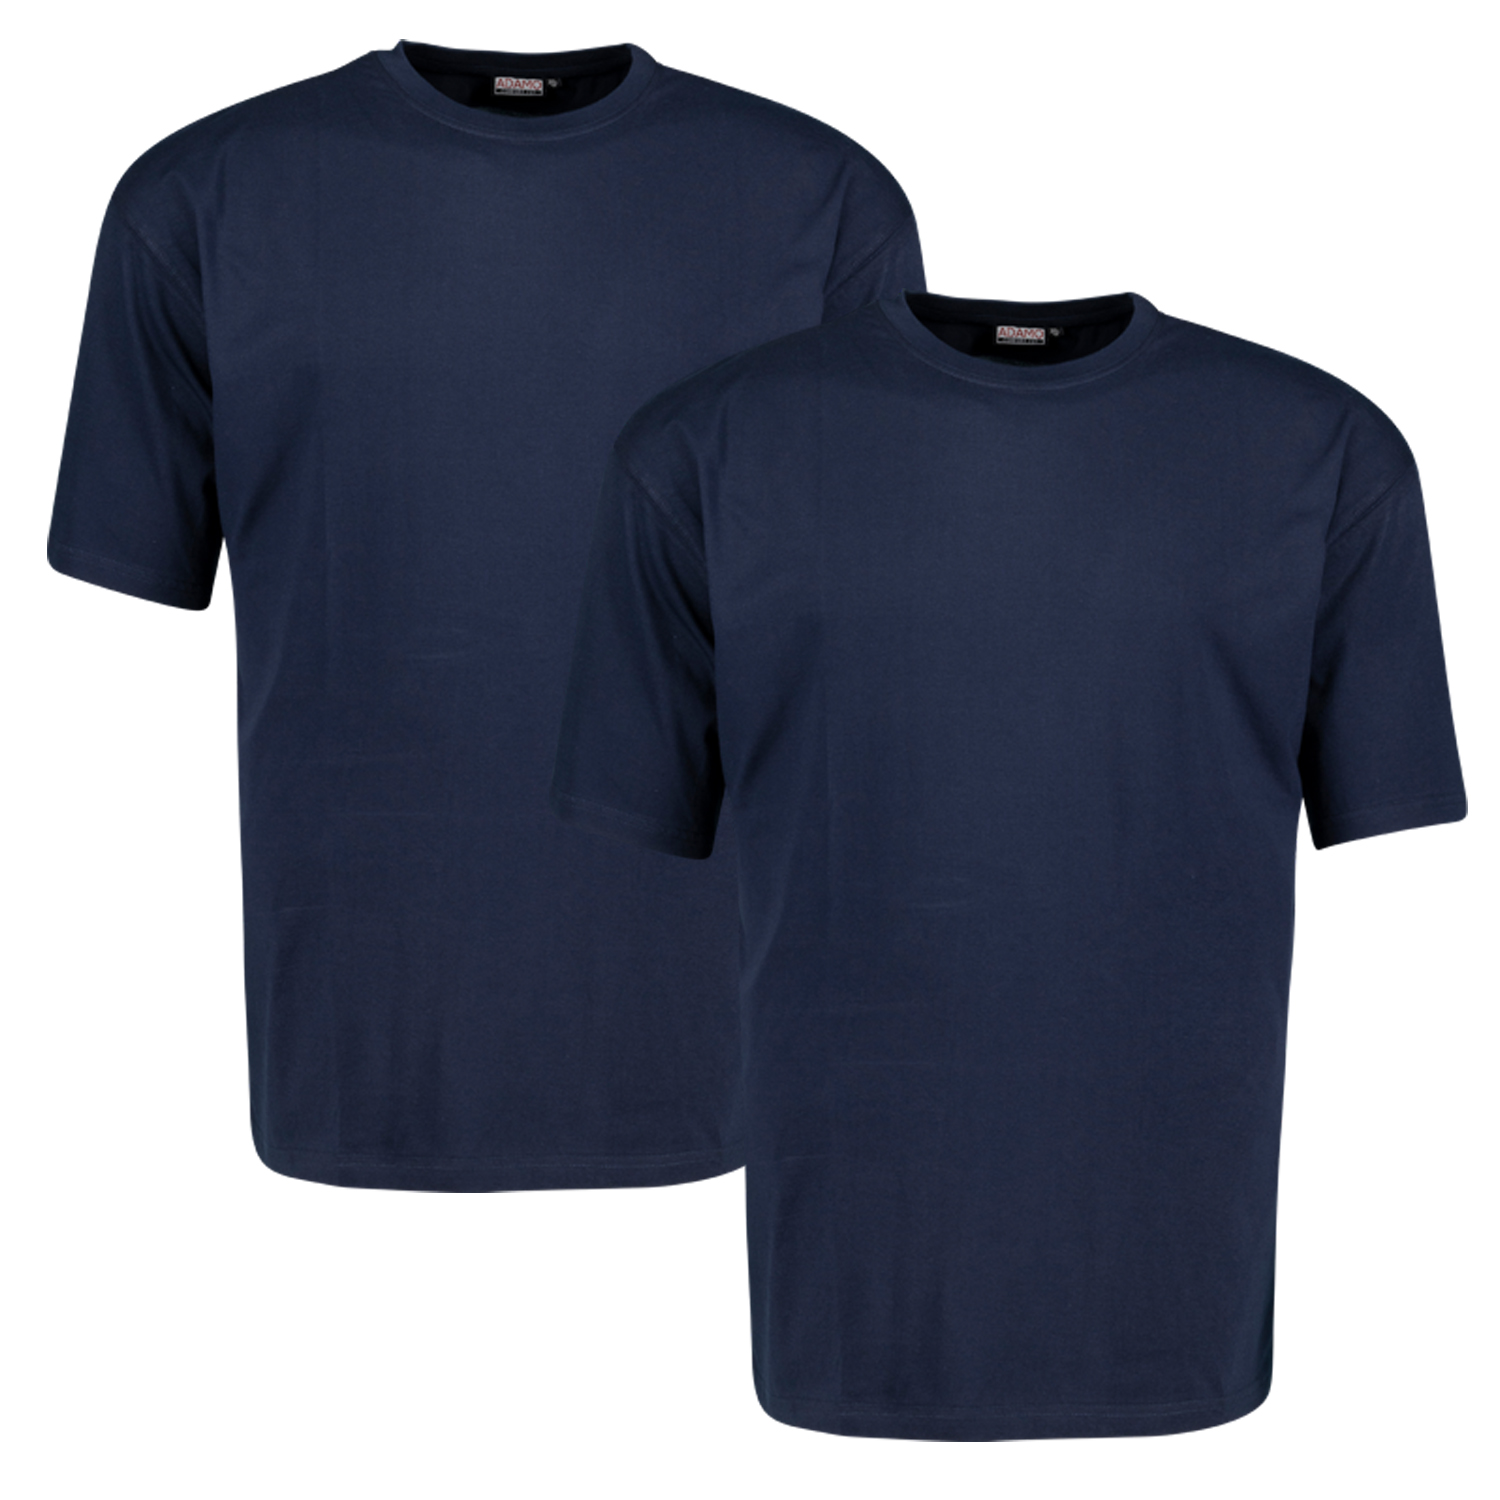 T-shirt bleu marine Marlon CONFORT FIT by ADAMO jusqu'à la grande taille 18XL - pack de deux